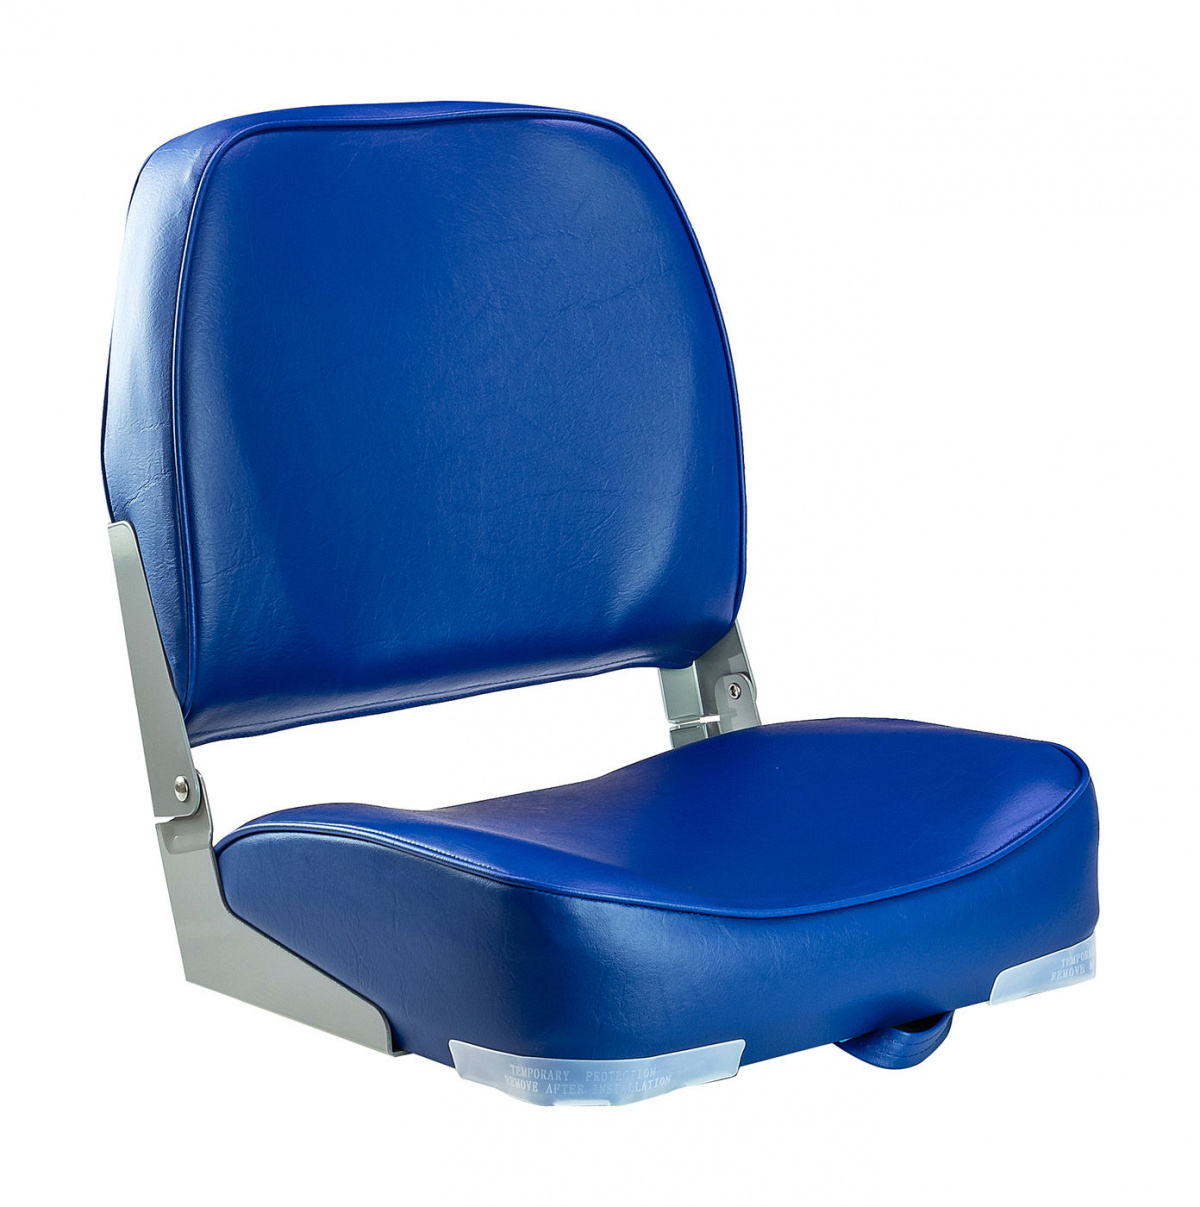 Кресло мягкое складное, обивка винил, цвет синий, Marine Rocket, 889-7719